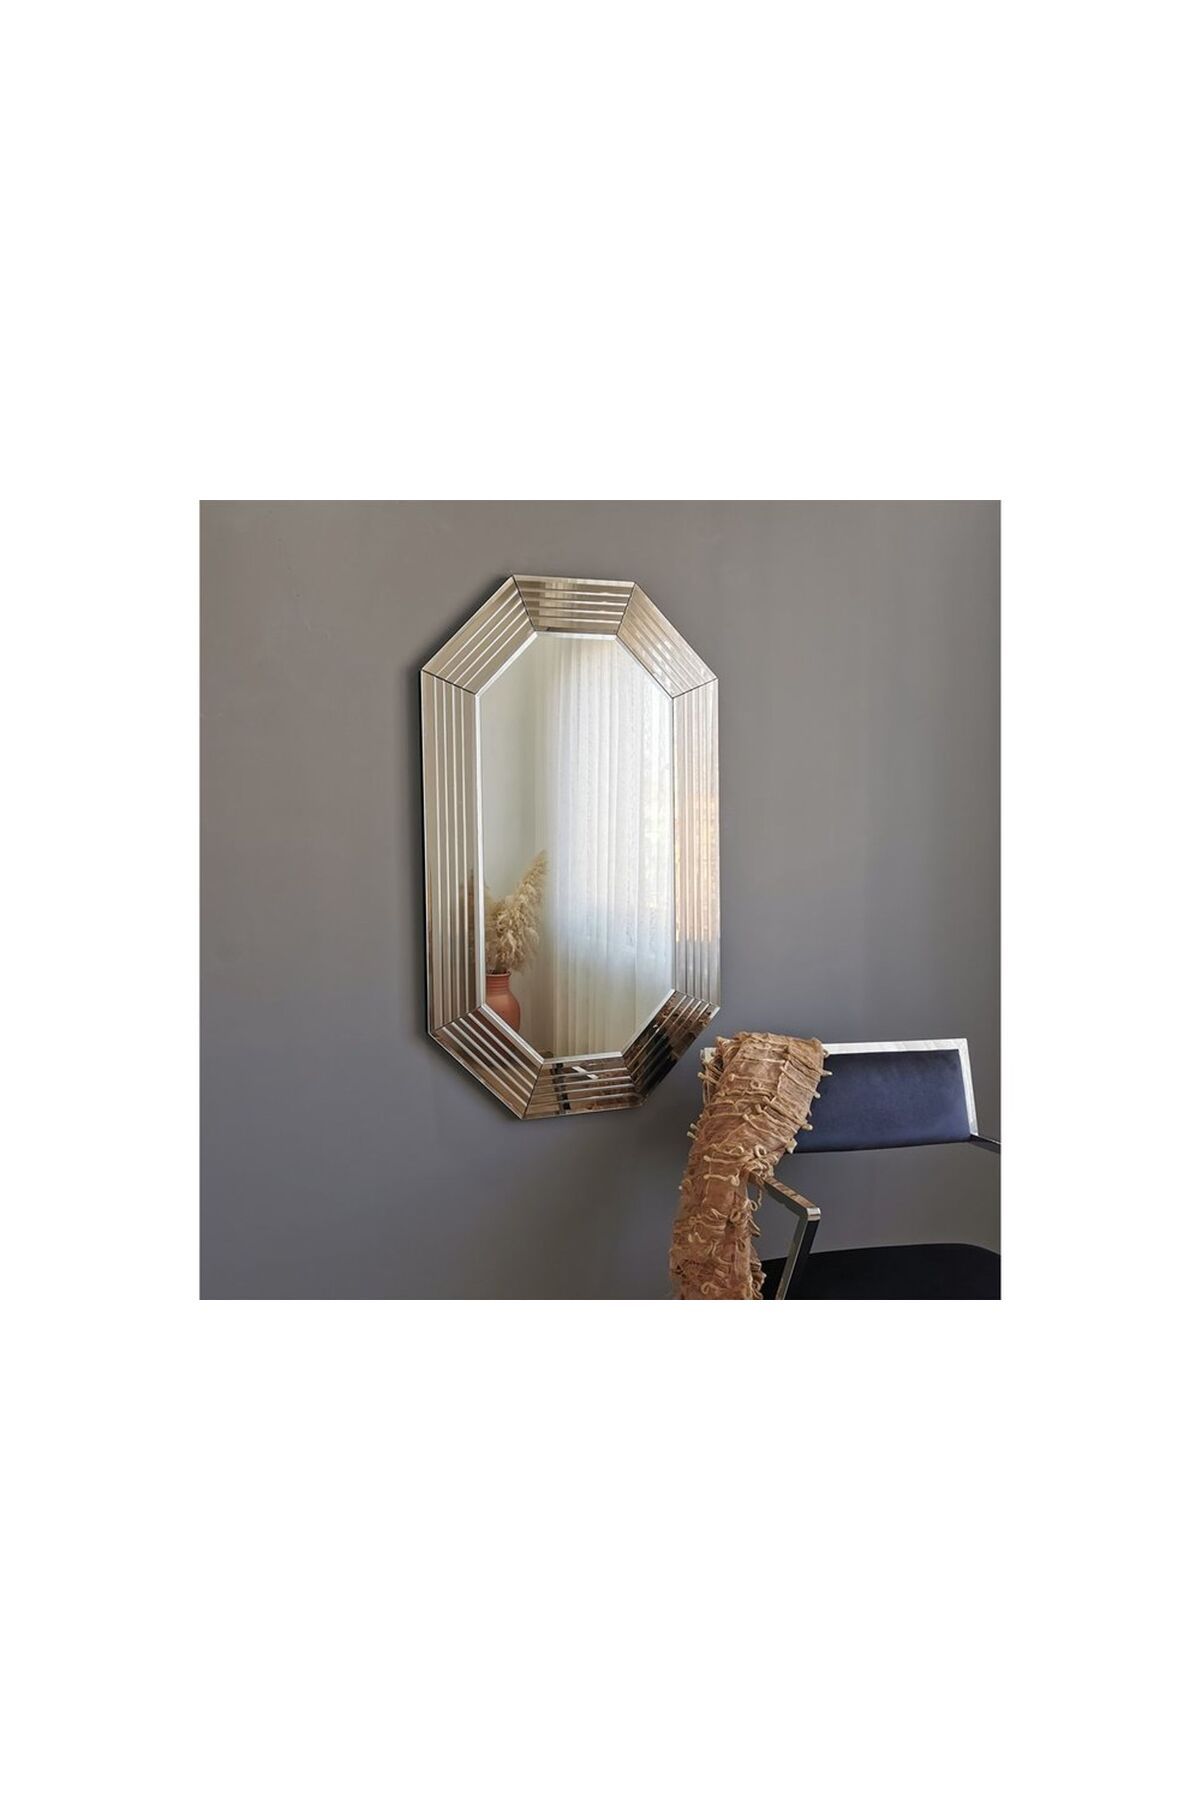 Vivense Neostill -boy Ayna Dekoratif Bronz Kenar Duvar Salon A312d